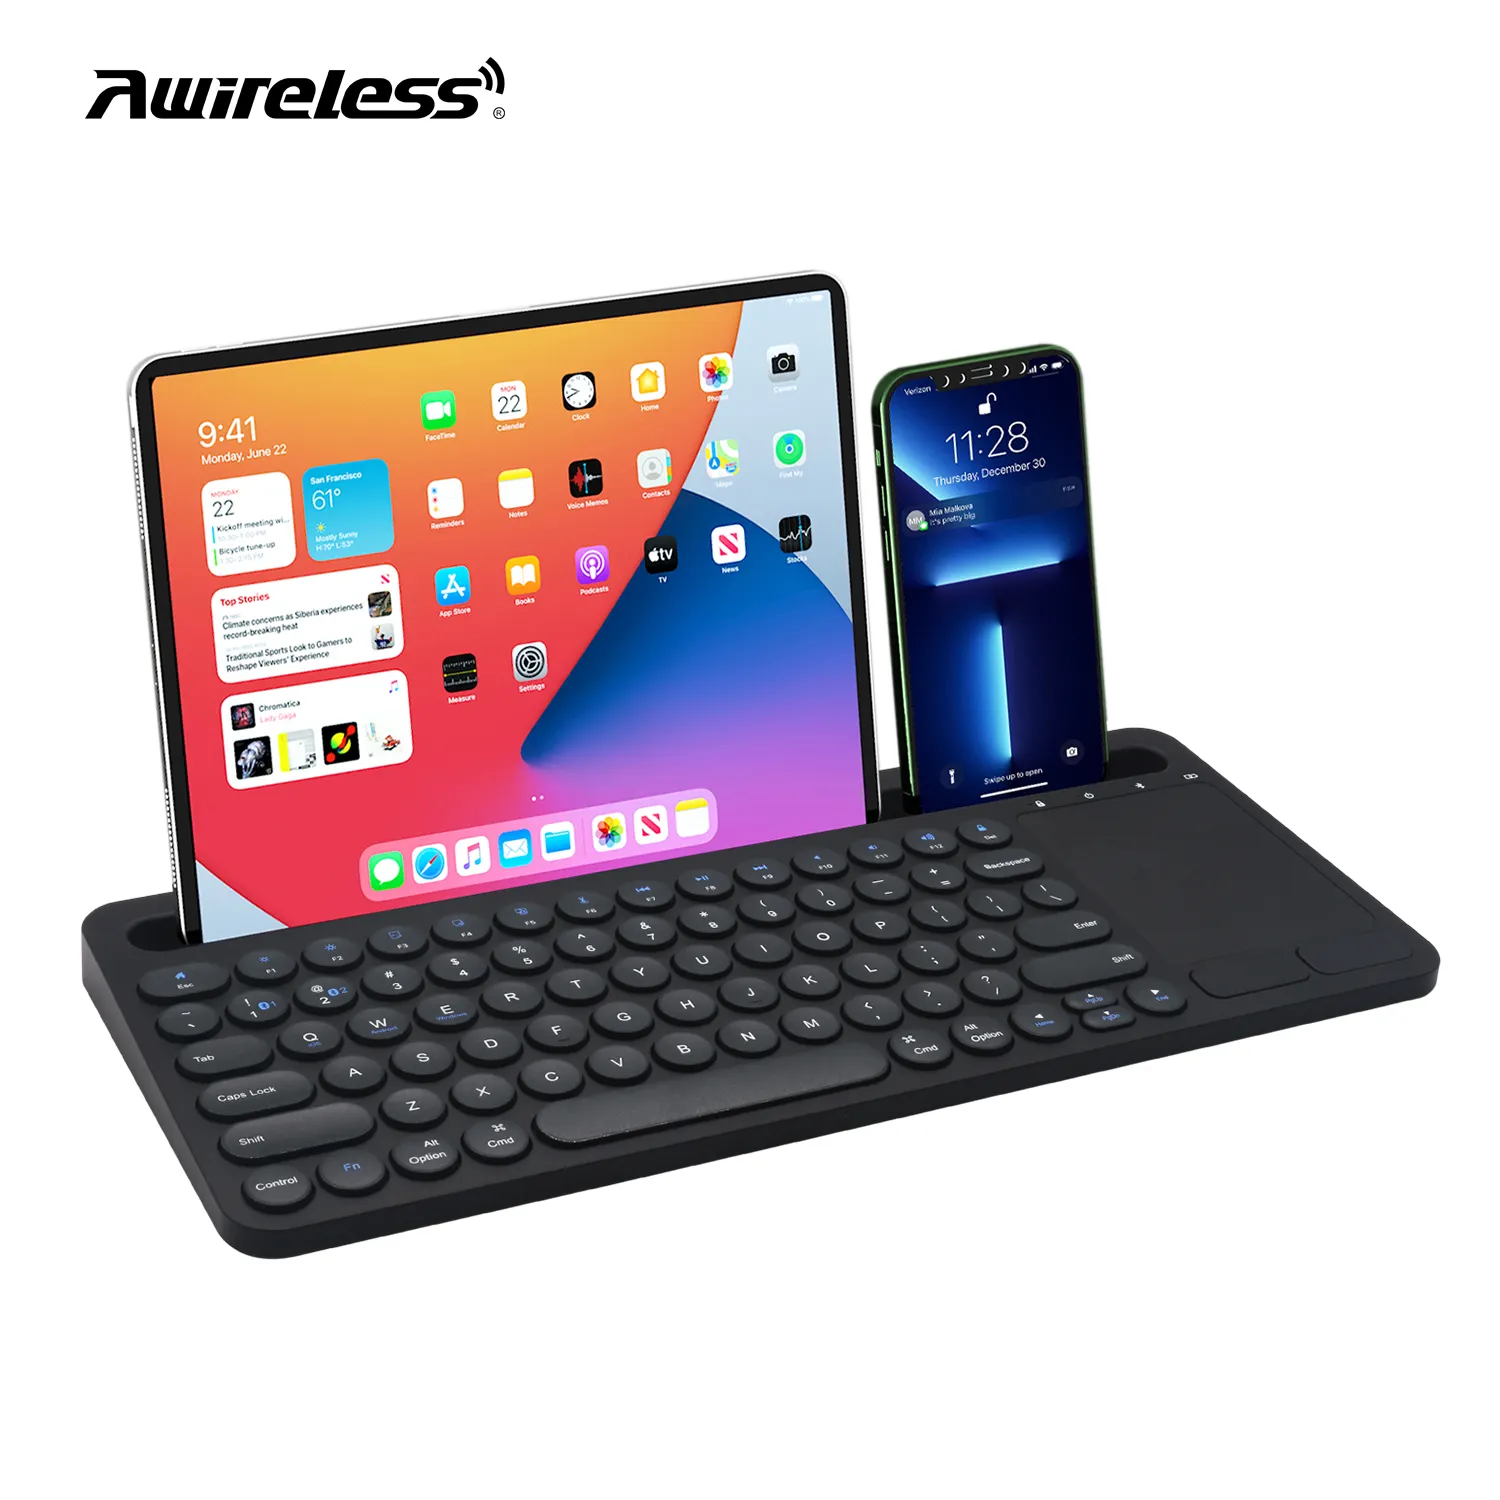 Özel İspanyolca arapça İngilizce kore klavye evrensel rgb arkadan aydınlatmalı siyah kablosuz bt klavye tablet pc ve telefon için